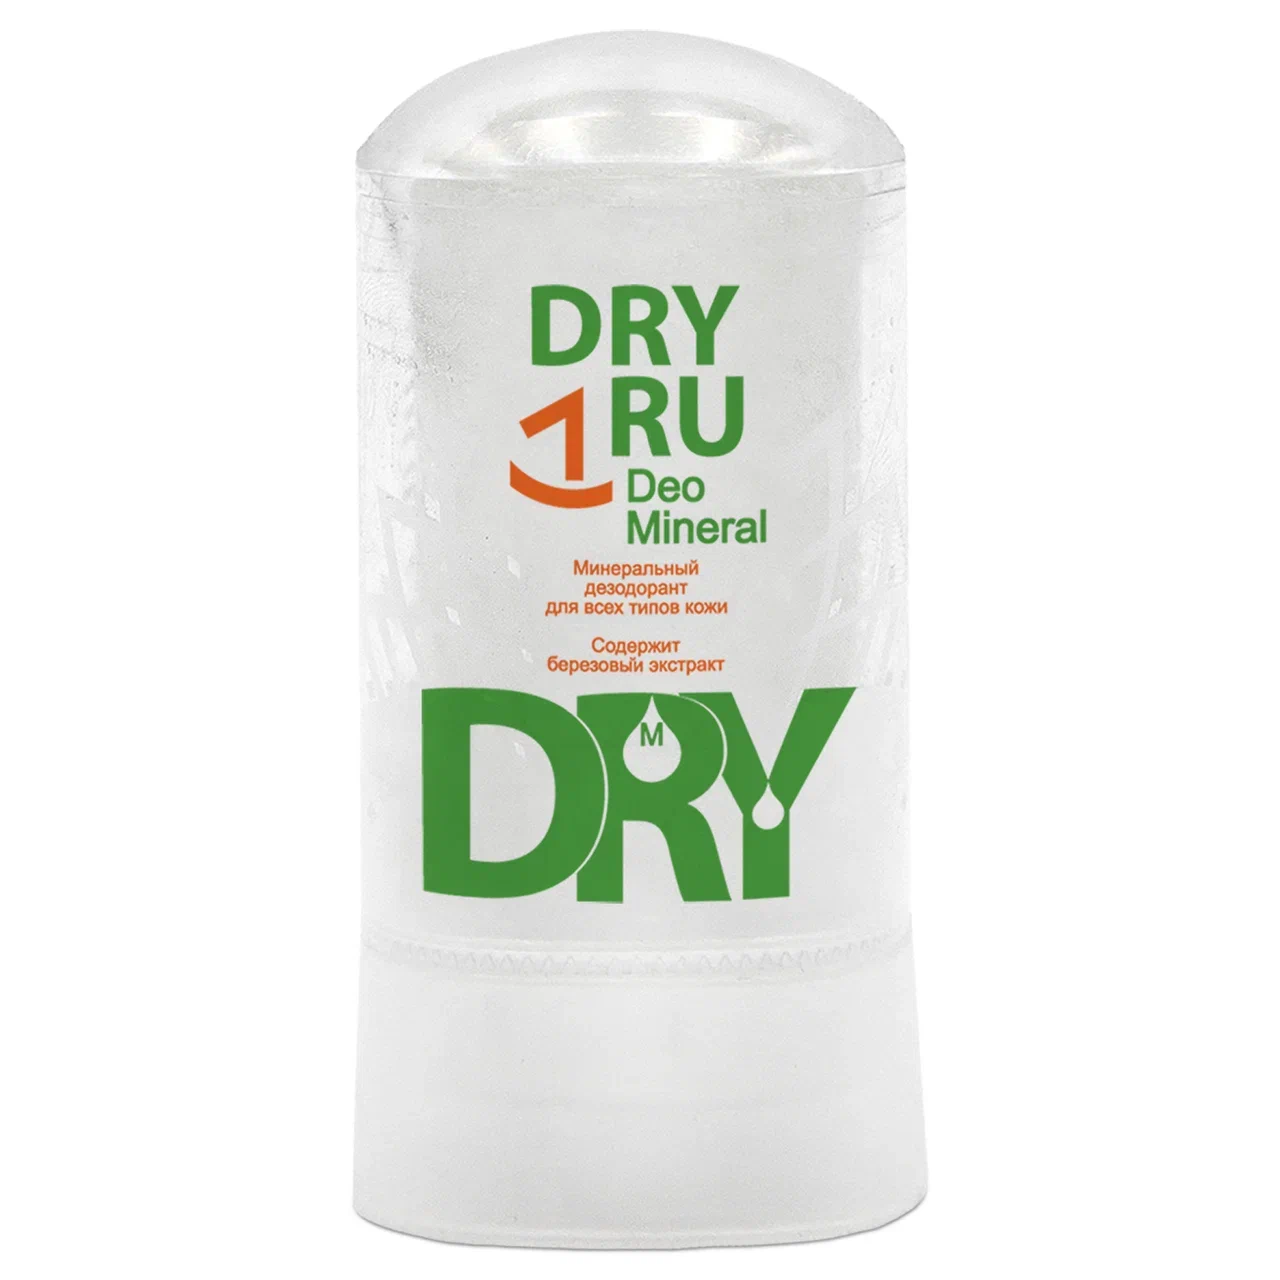 Дезодорант DRY RU женский мужской, стик от пота и запаха для подмышек, рук и ног, 60 г дихлофос универсальный от всех насекомых варан без запаха 440 мл